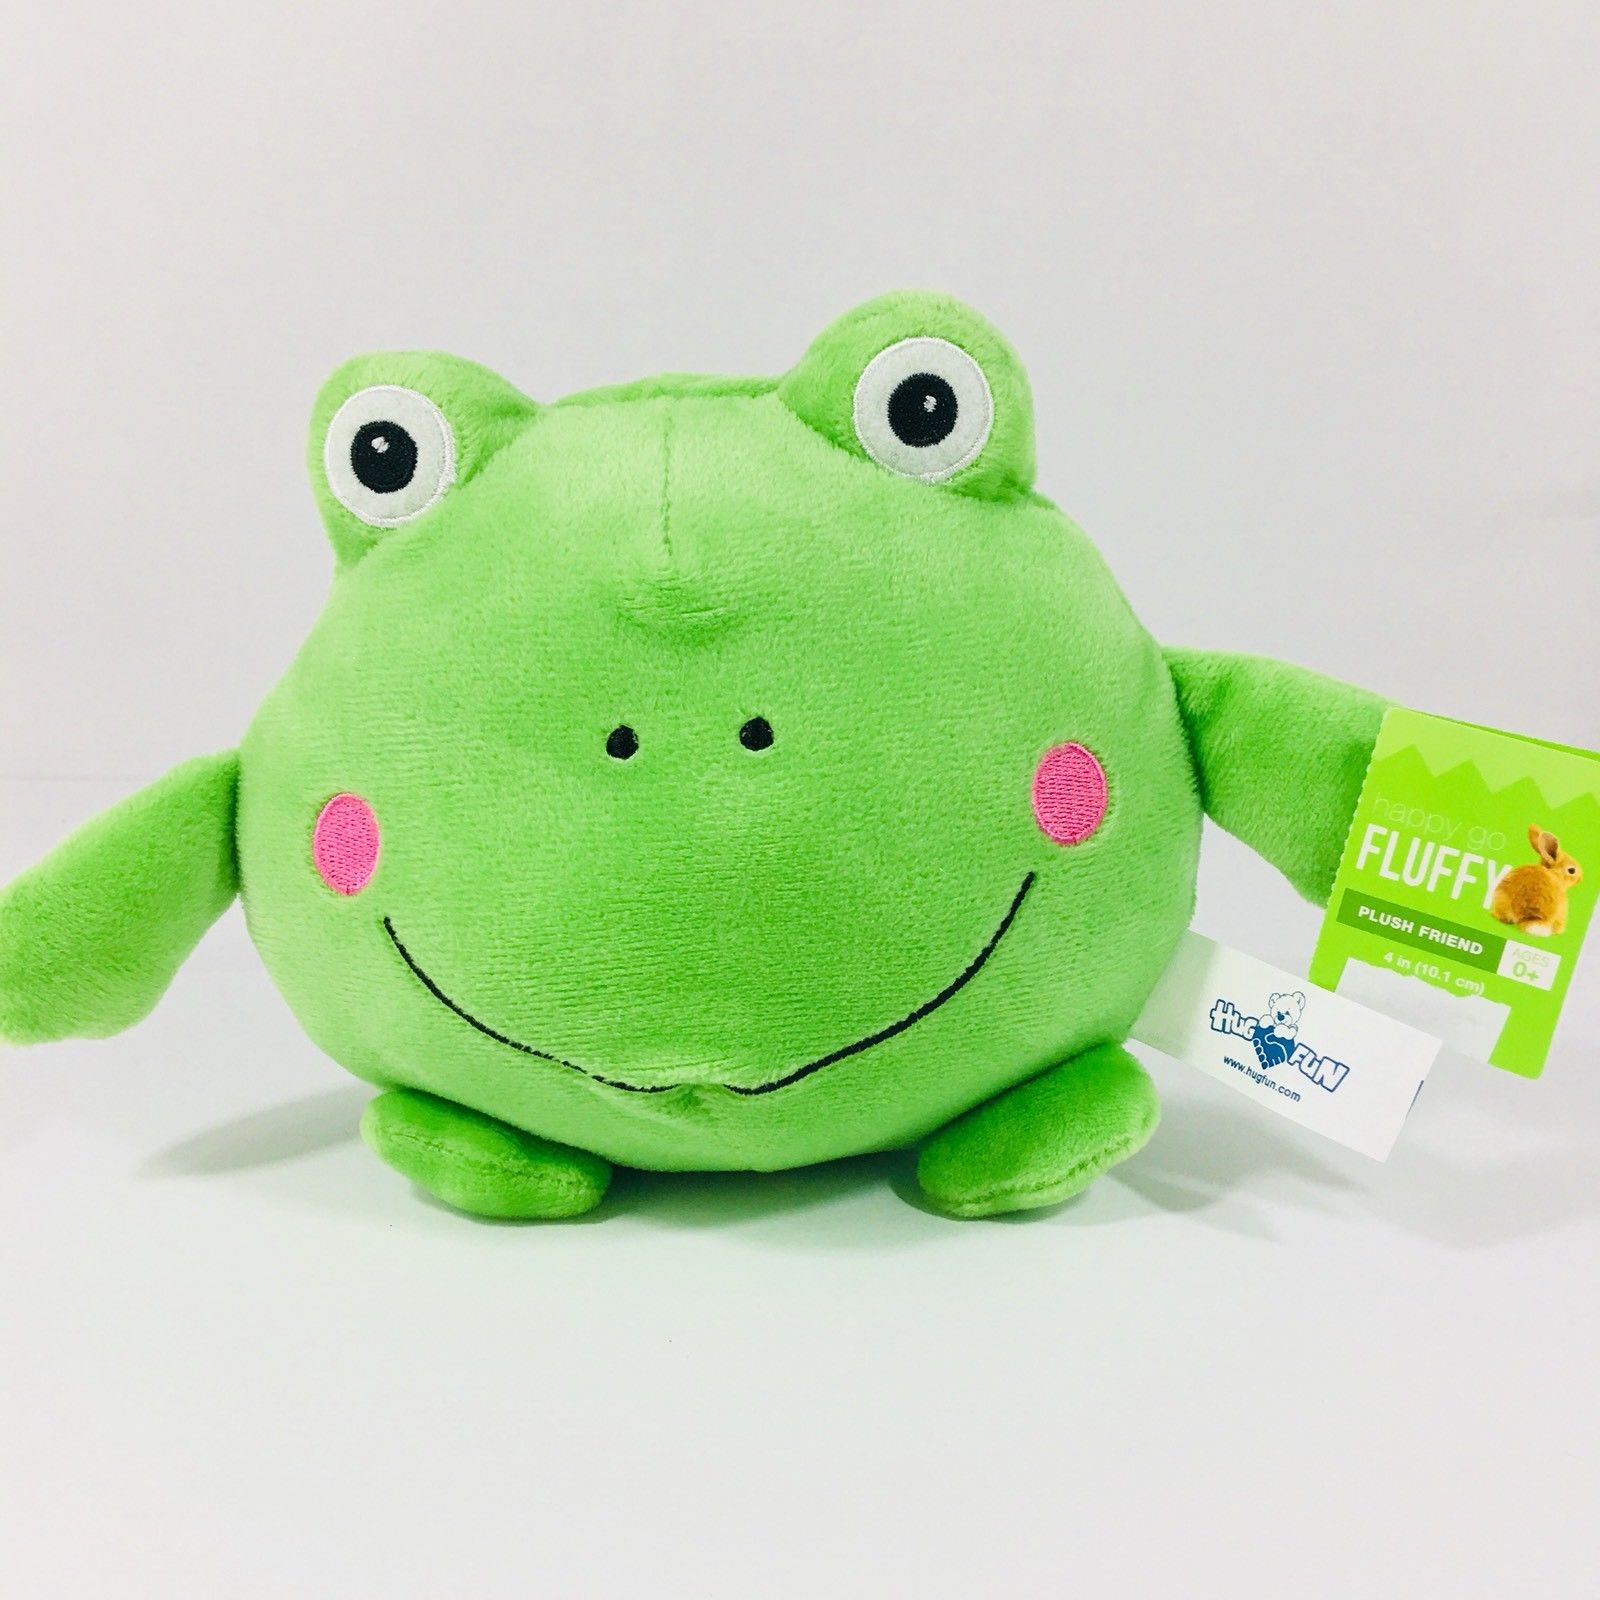 Hug Fun Frog Plush Stuffed Animal Toy 6.5